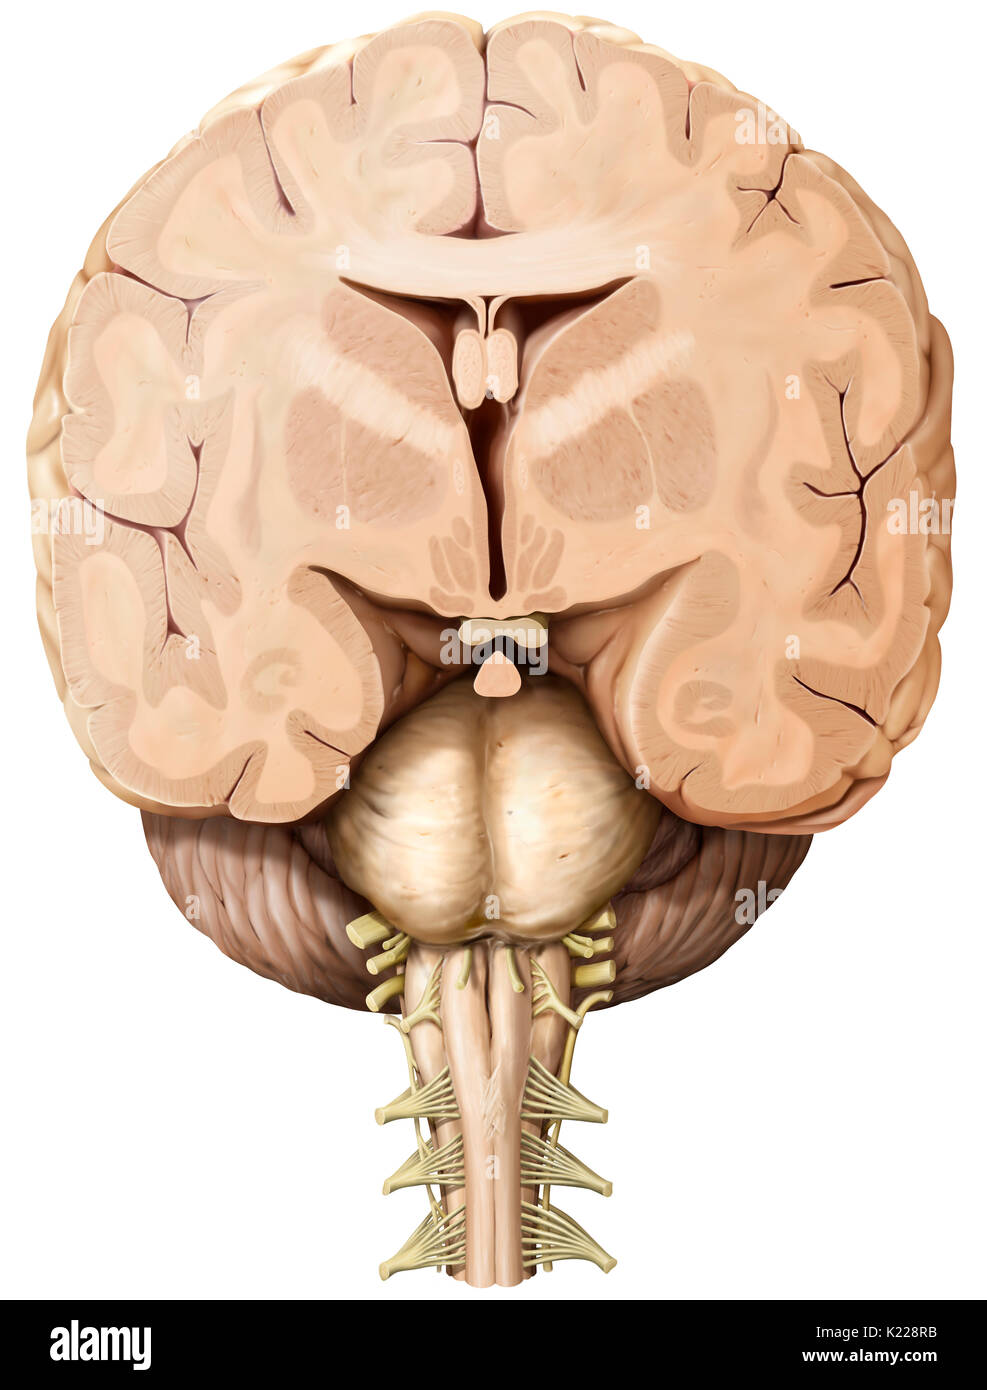 Teil des zentralen Nervensystems im Schädel eingeschlossen, bestehend aus dem Großhirn, Kleinhirn und Hirnstamm; es ist verantwortlich für die Sinneswahrnehmung, die meisten Bewegungen, Speicher, Sprache, Reflexe und lebenswichtige Funktionen. Stockfoto